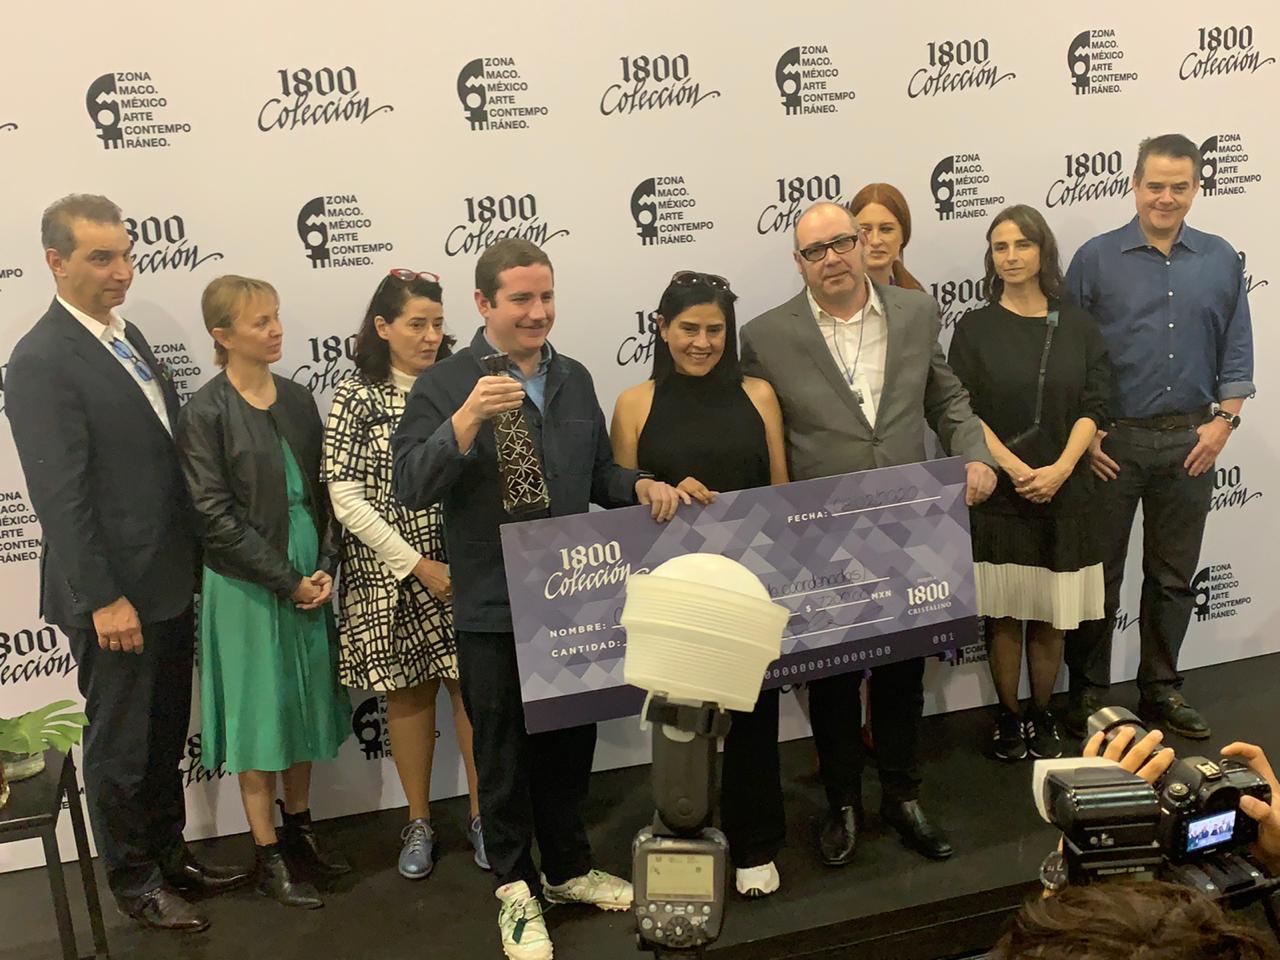 Gina Arizpe, ganadora del Primer Premio de la Colección 1800 - ZONA MACO 2020